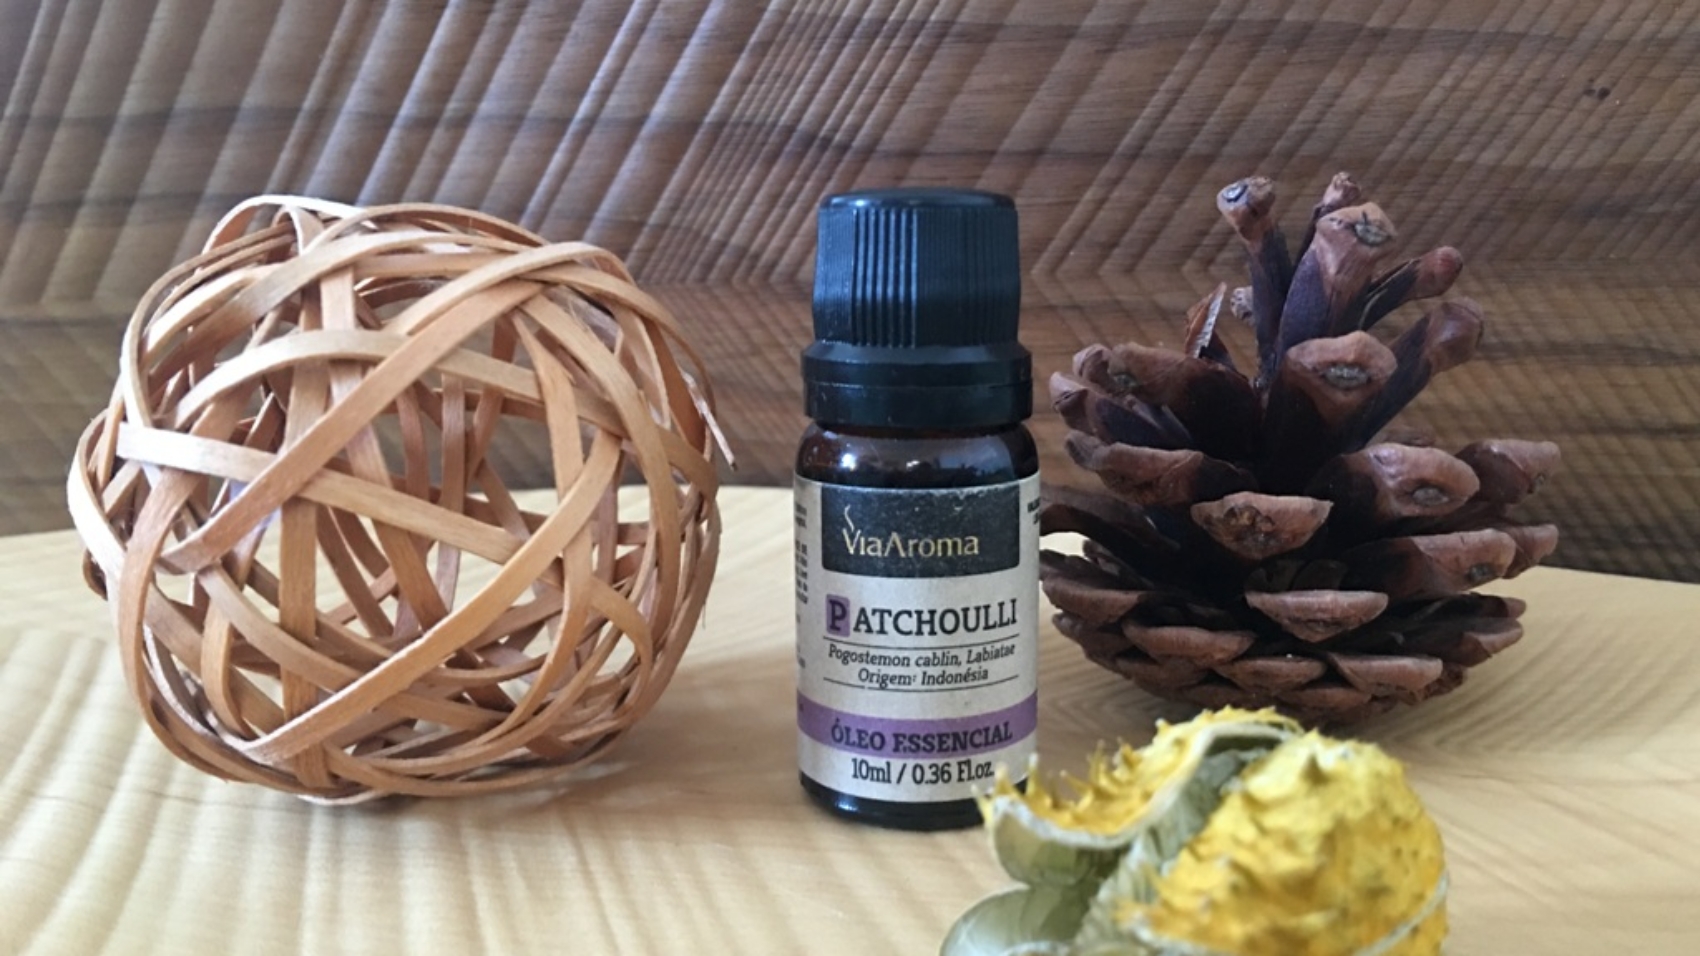 oleo essencial de patchoulli para aromaterapia